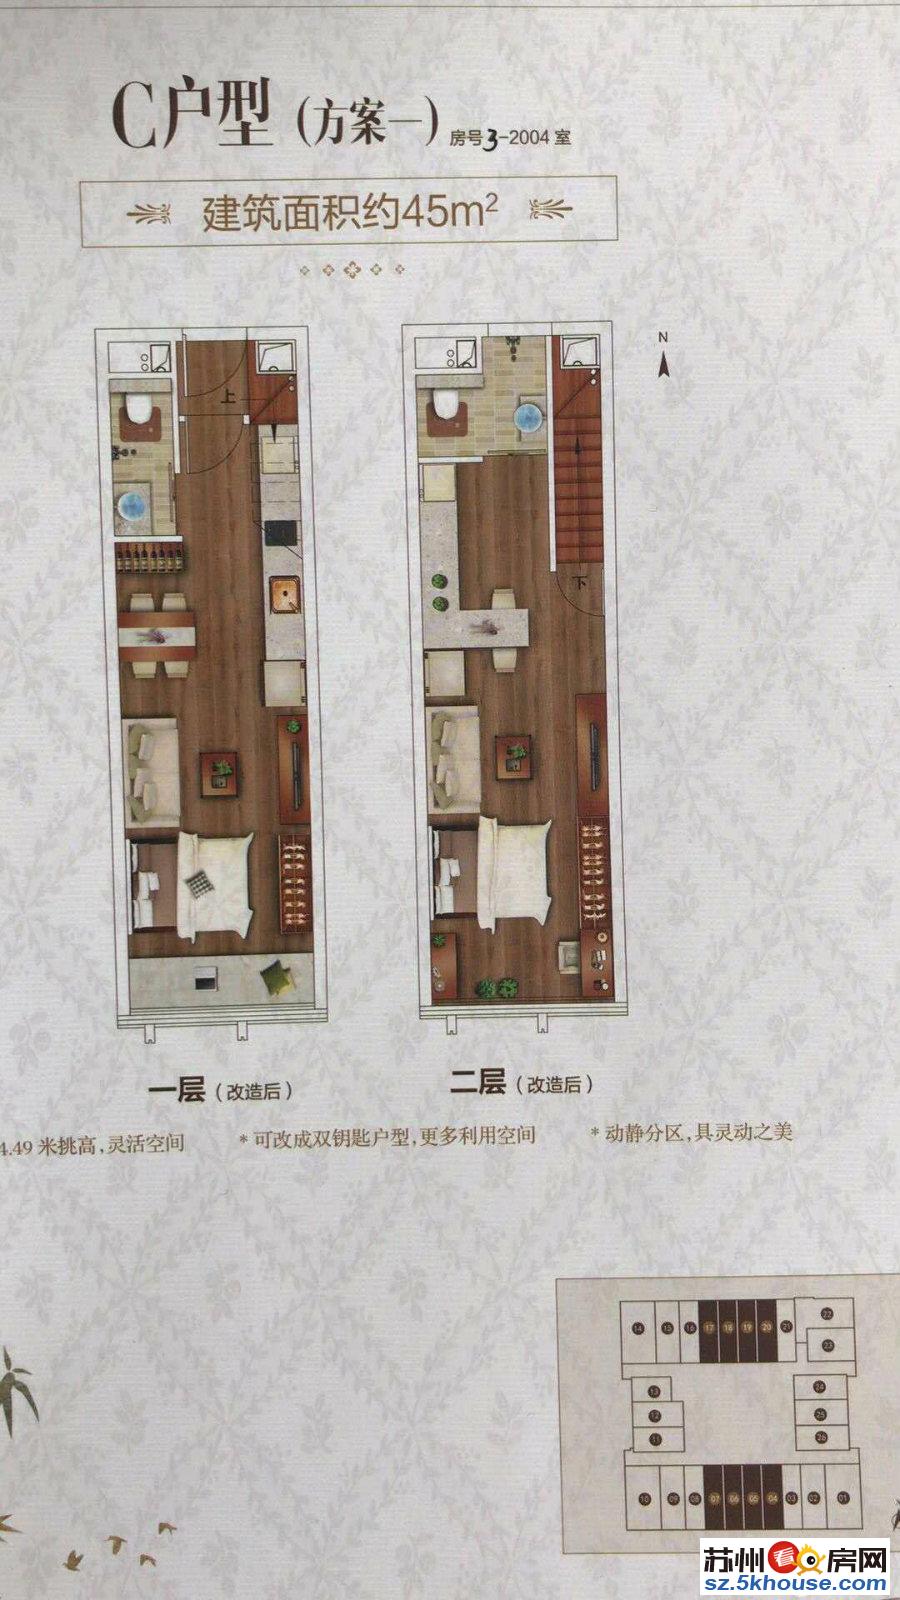 苏州火车站单价1.4万起带阳台复式两房地铁2.4号线